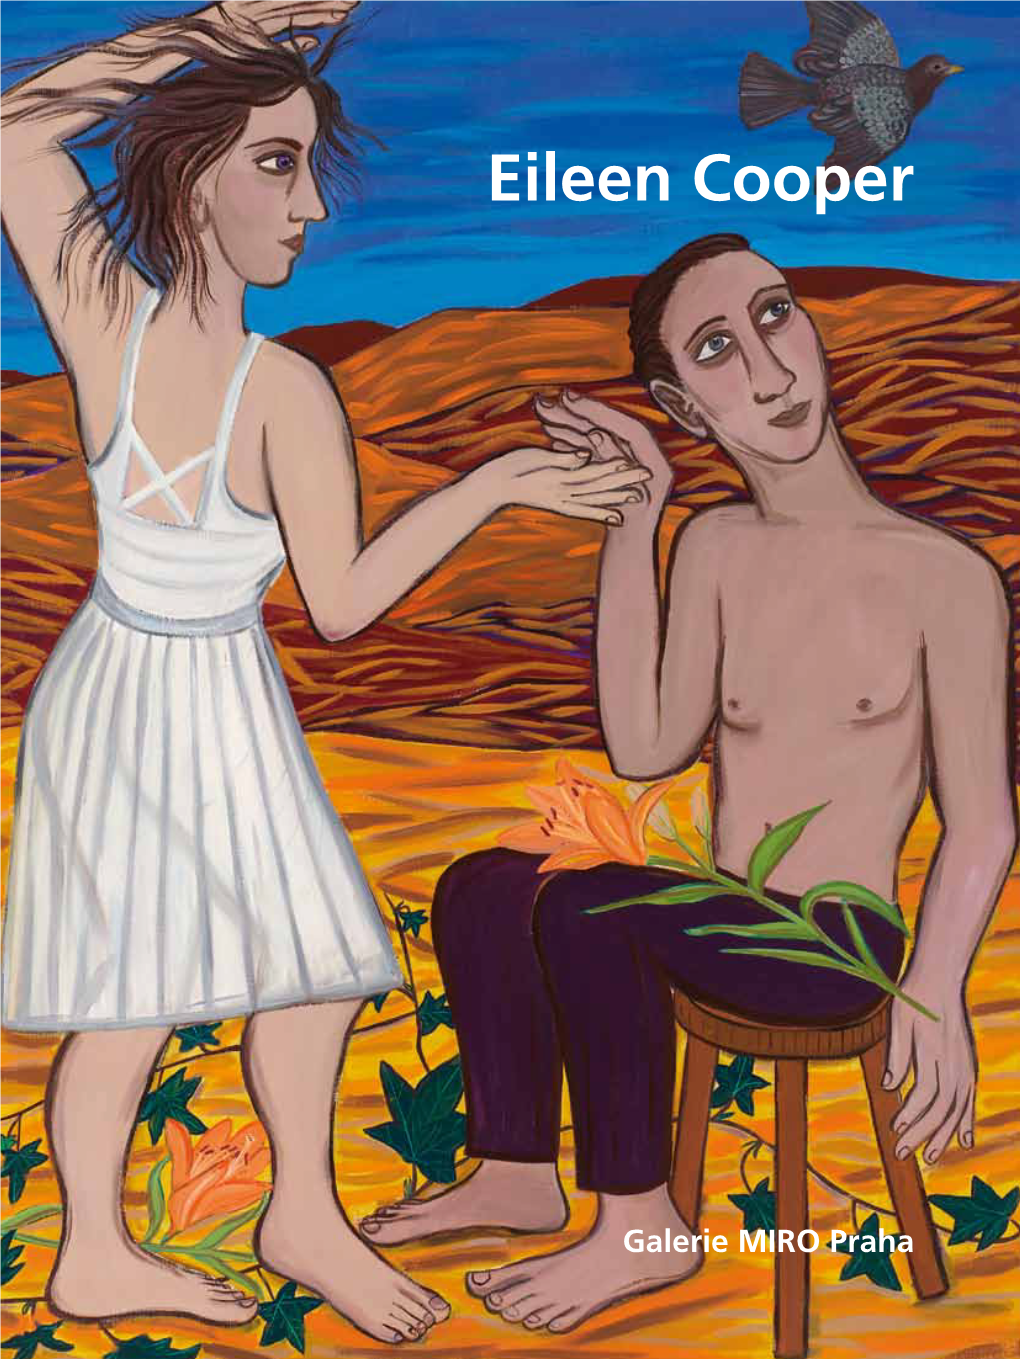 Eileen Cooper